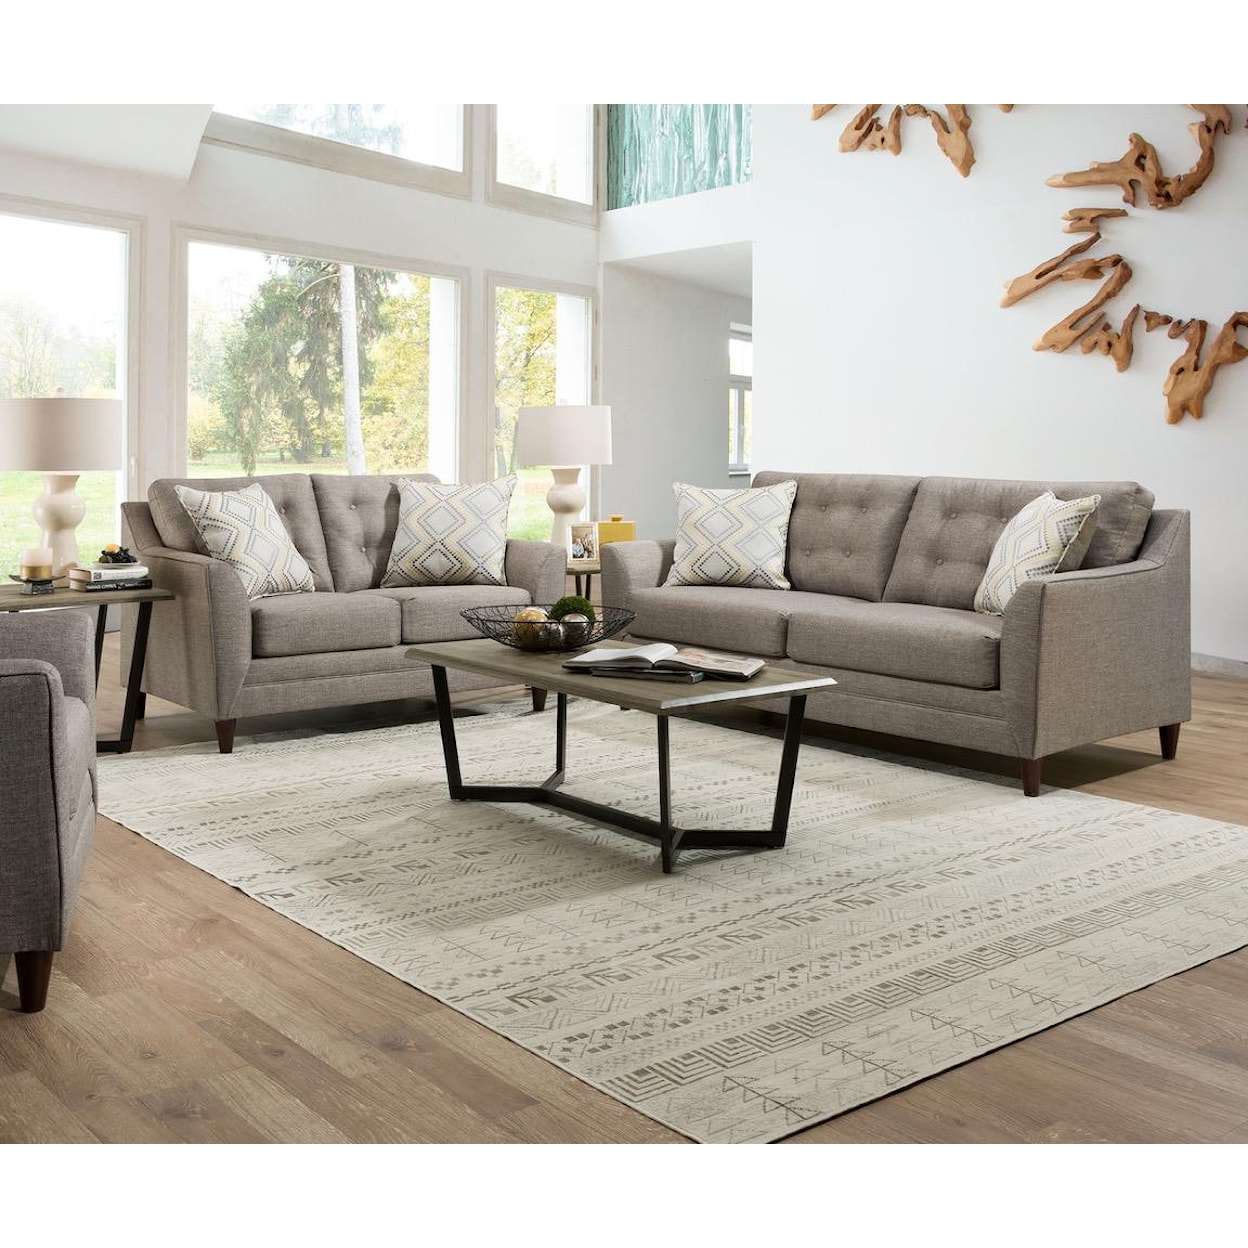 VFM Basics 8126 Stationary Living Room Group